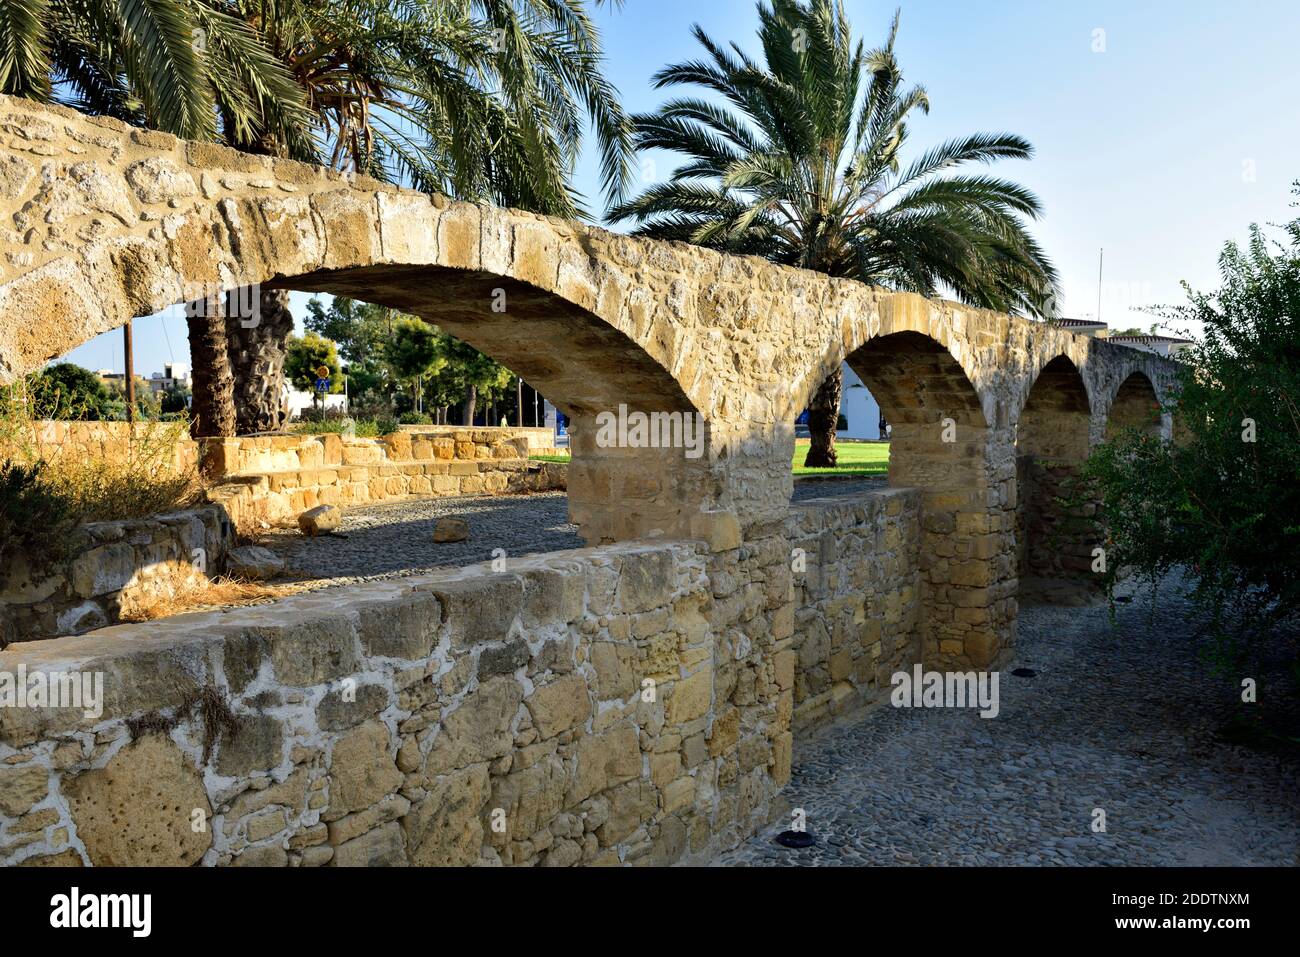 Partie des vestiges d'un ancien aqueduc du XVIIIe siècle à Nicosie, Chypre Banque D'Images